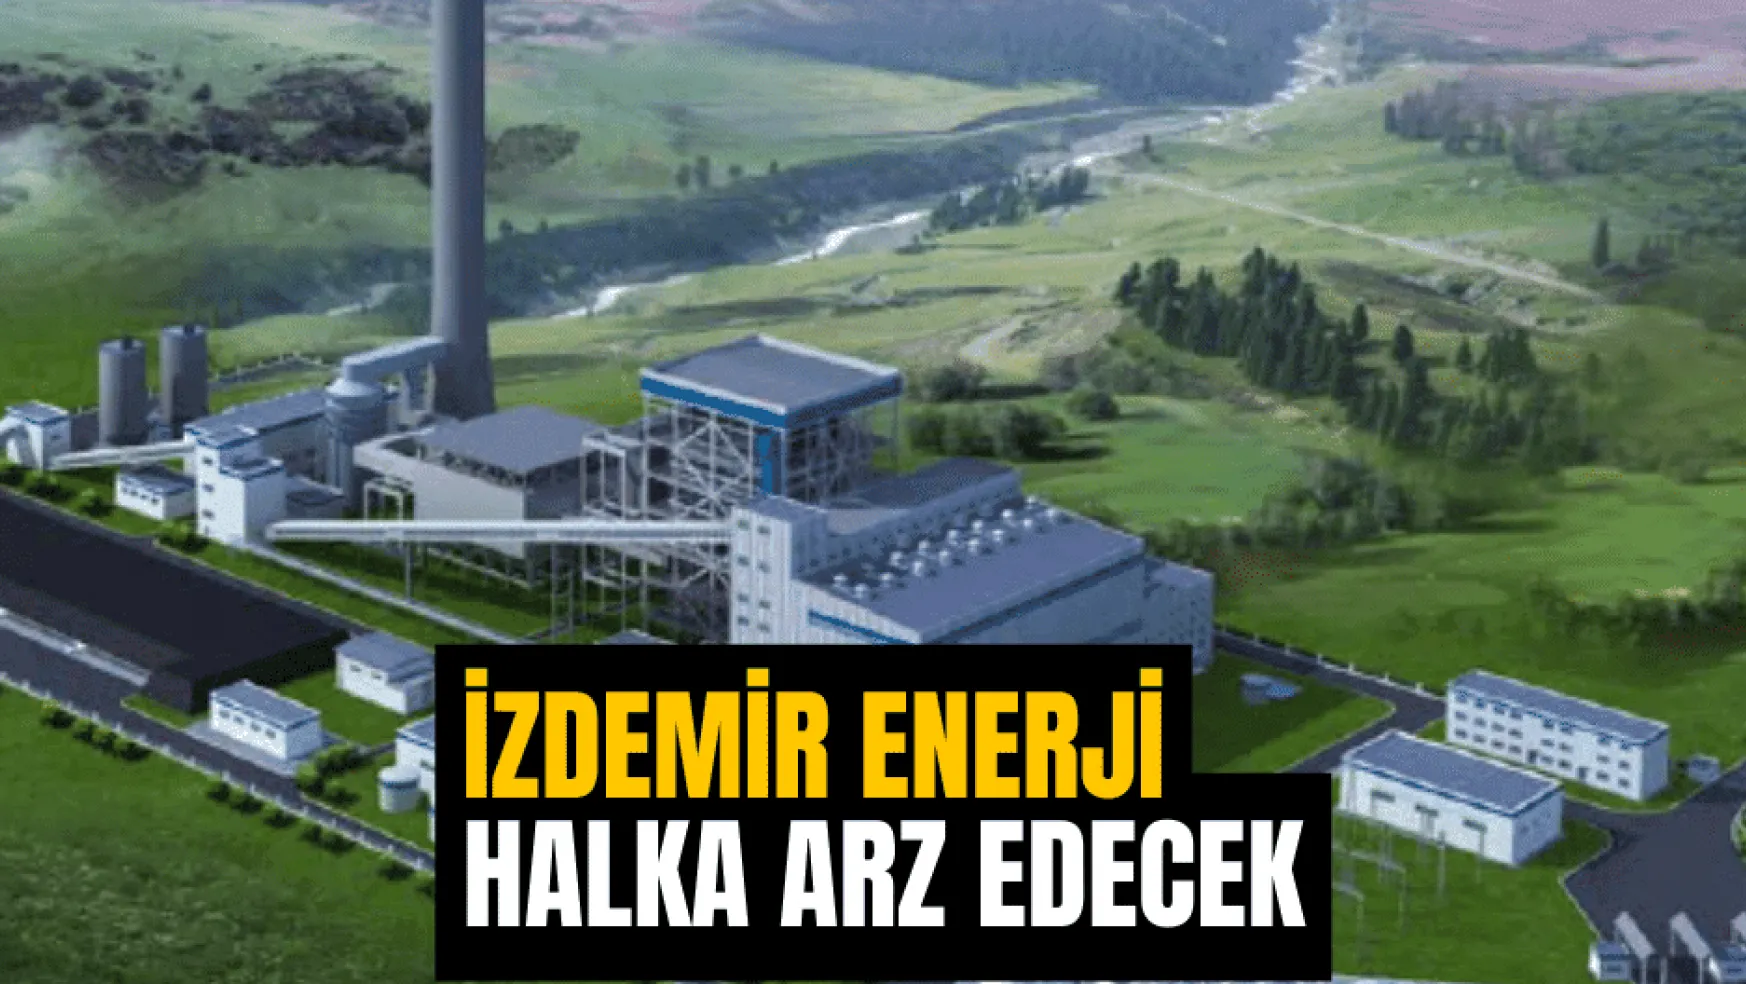 İzdemir Enerji Elektrik Üretim halka arz için hazırlıklara başladı